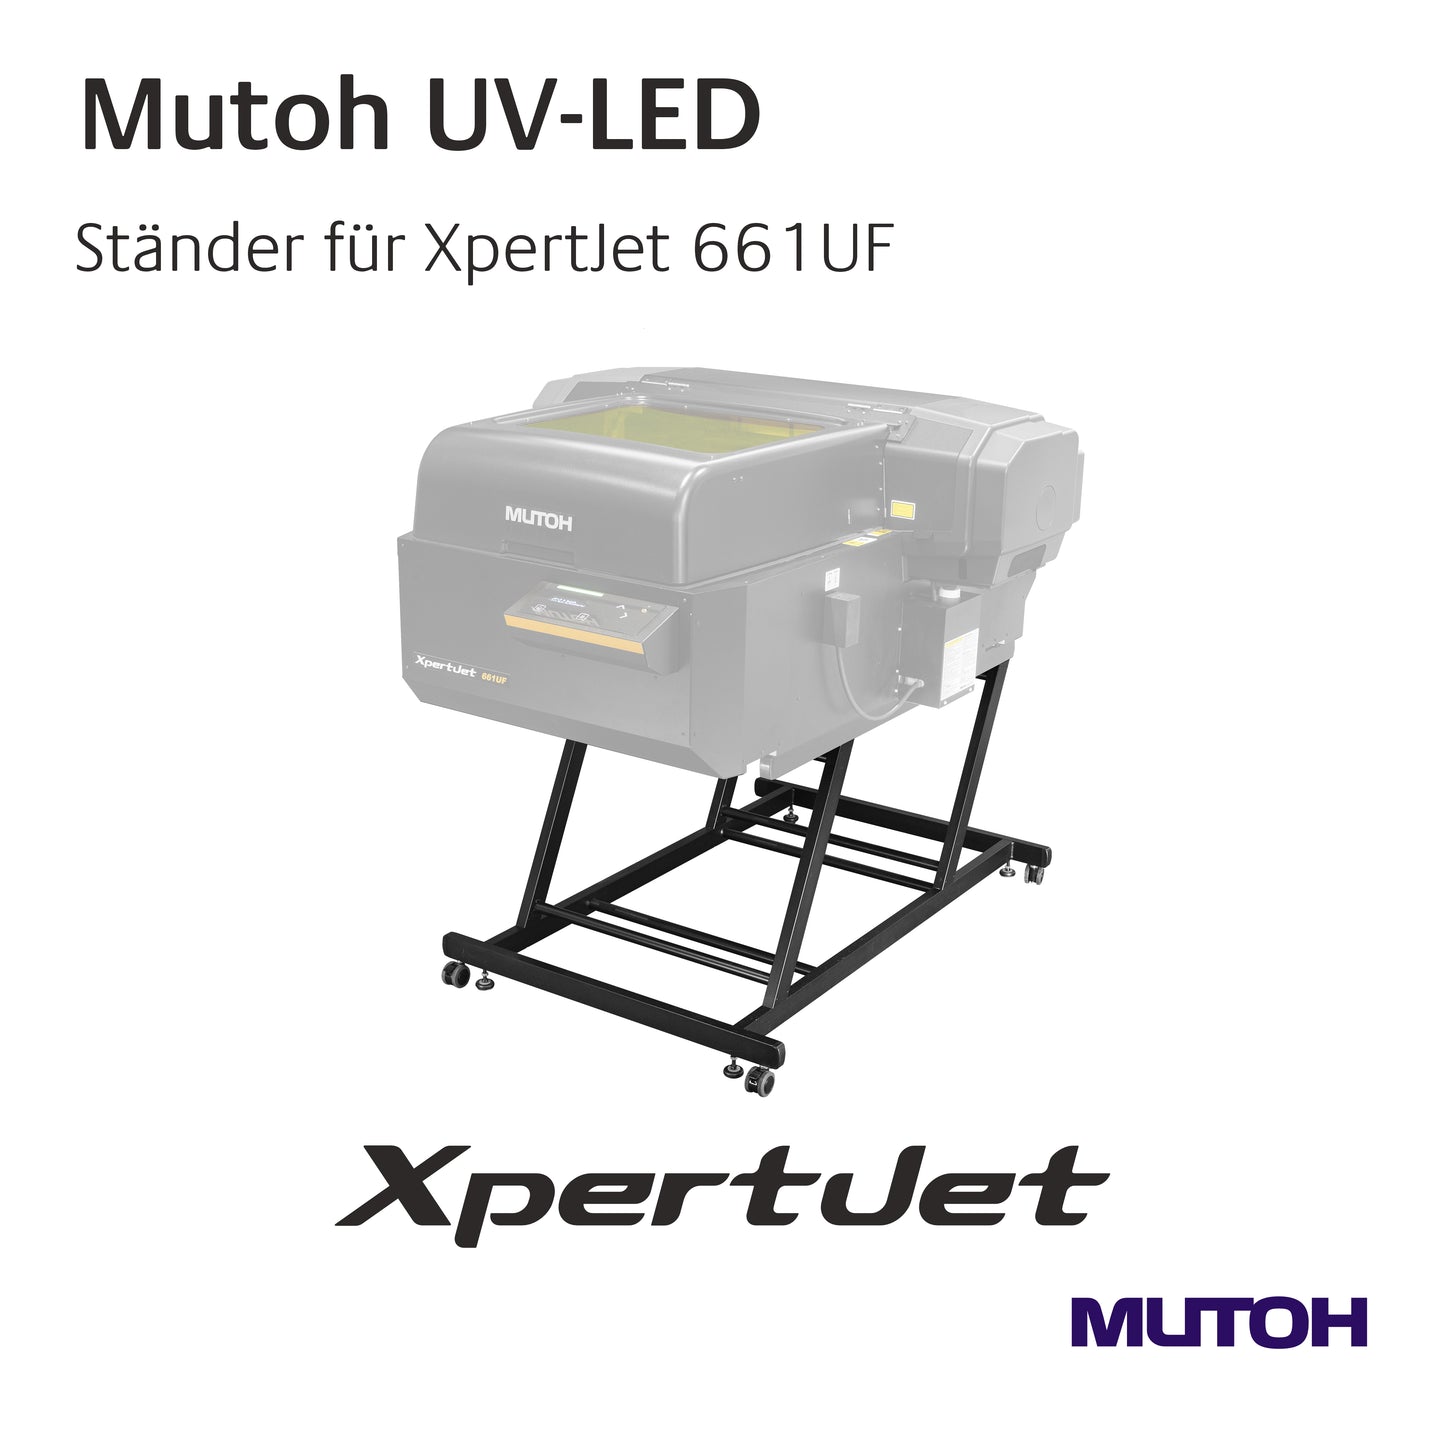 Mutoh -  Optionen für XpertJet 661UF